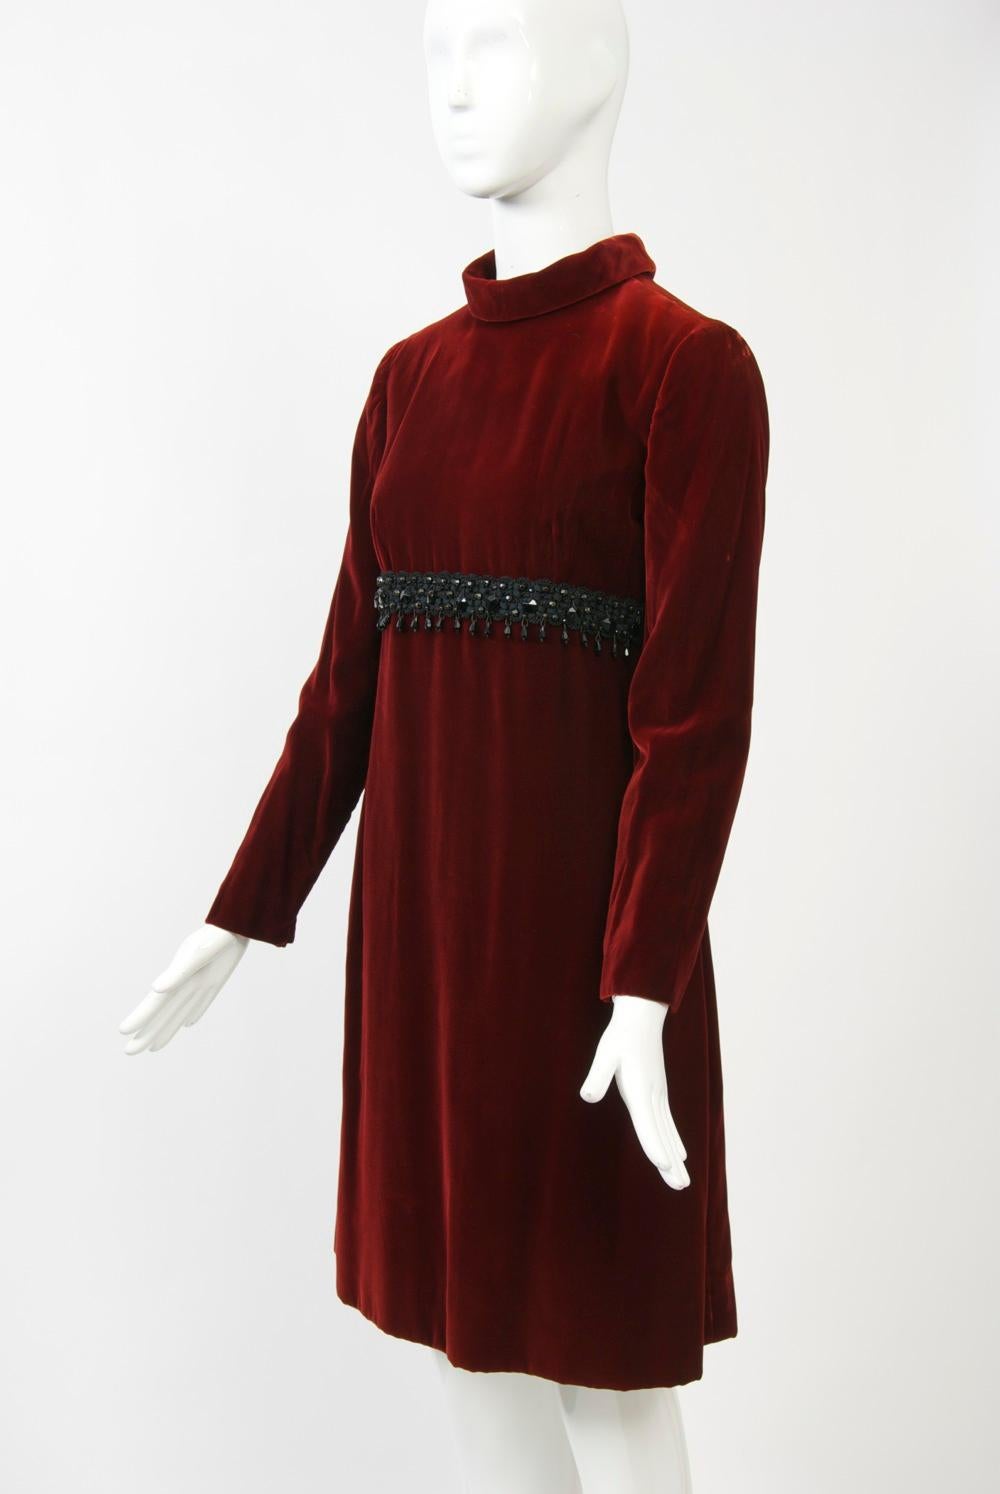 Kiki Hart Burgundy Velvet Dress For Sale 1